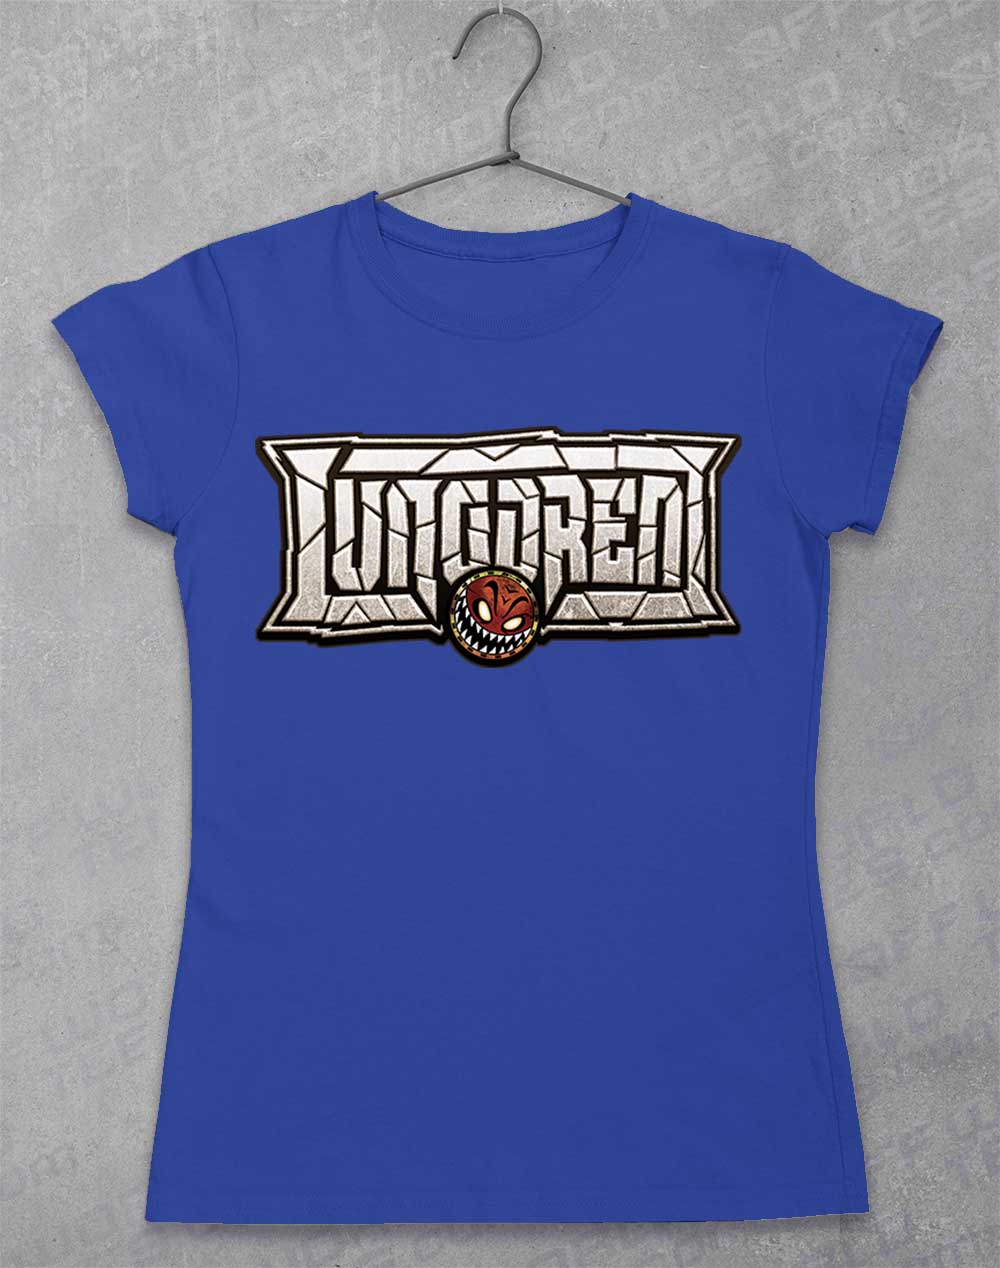 Royal - LUNGDREN Smashed Logo Women's T-Shirt